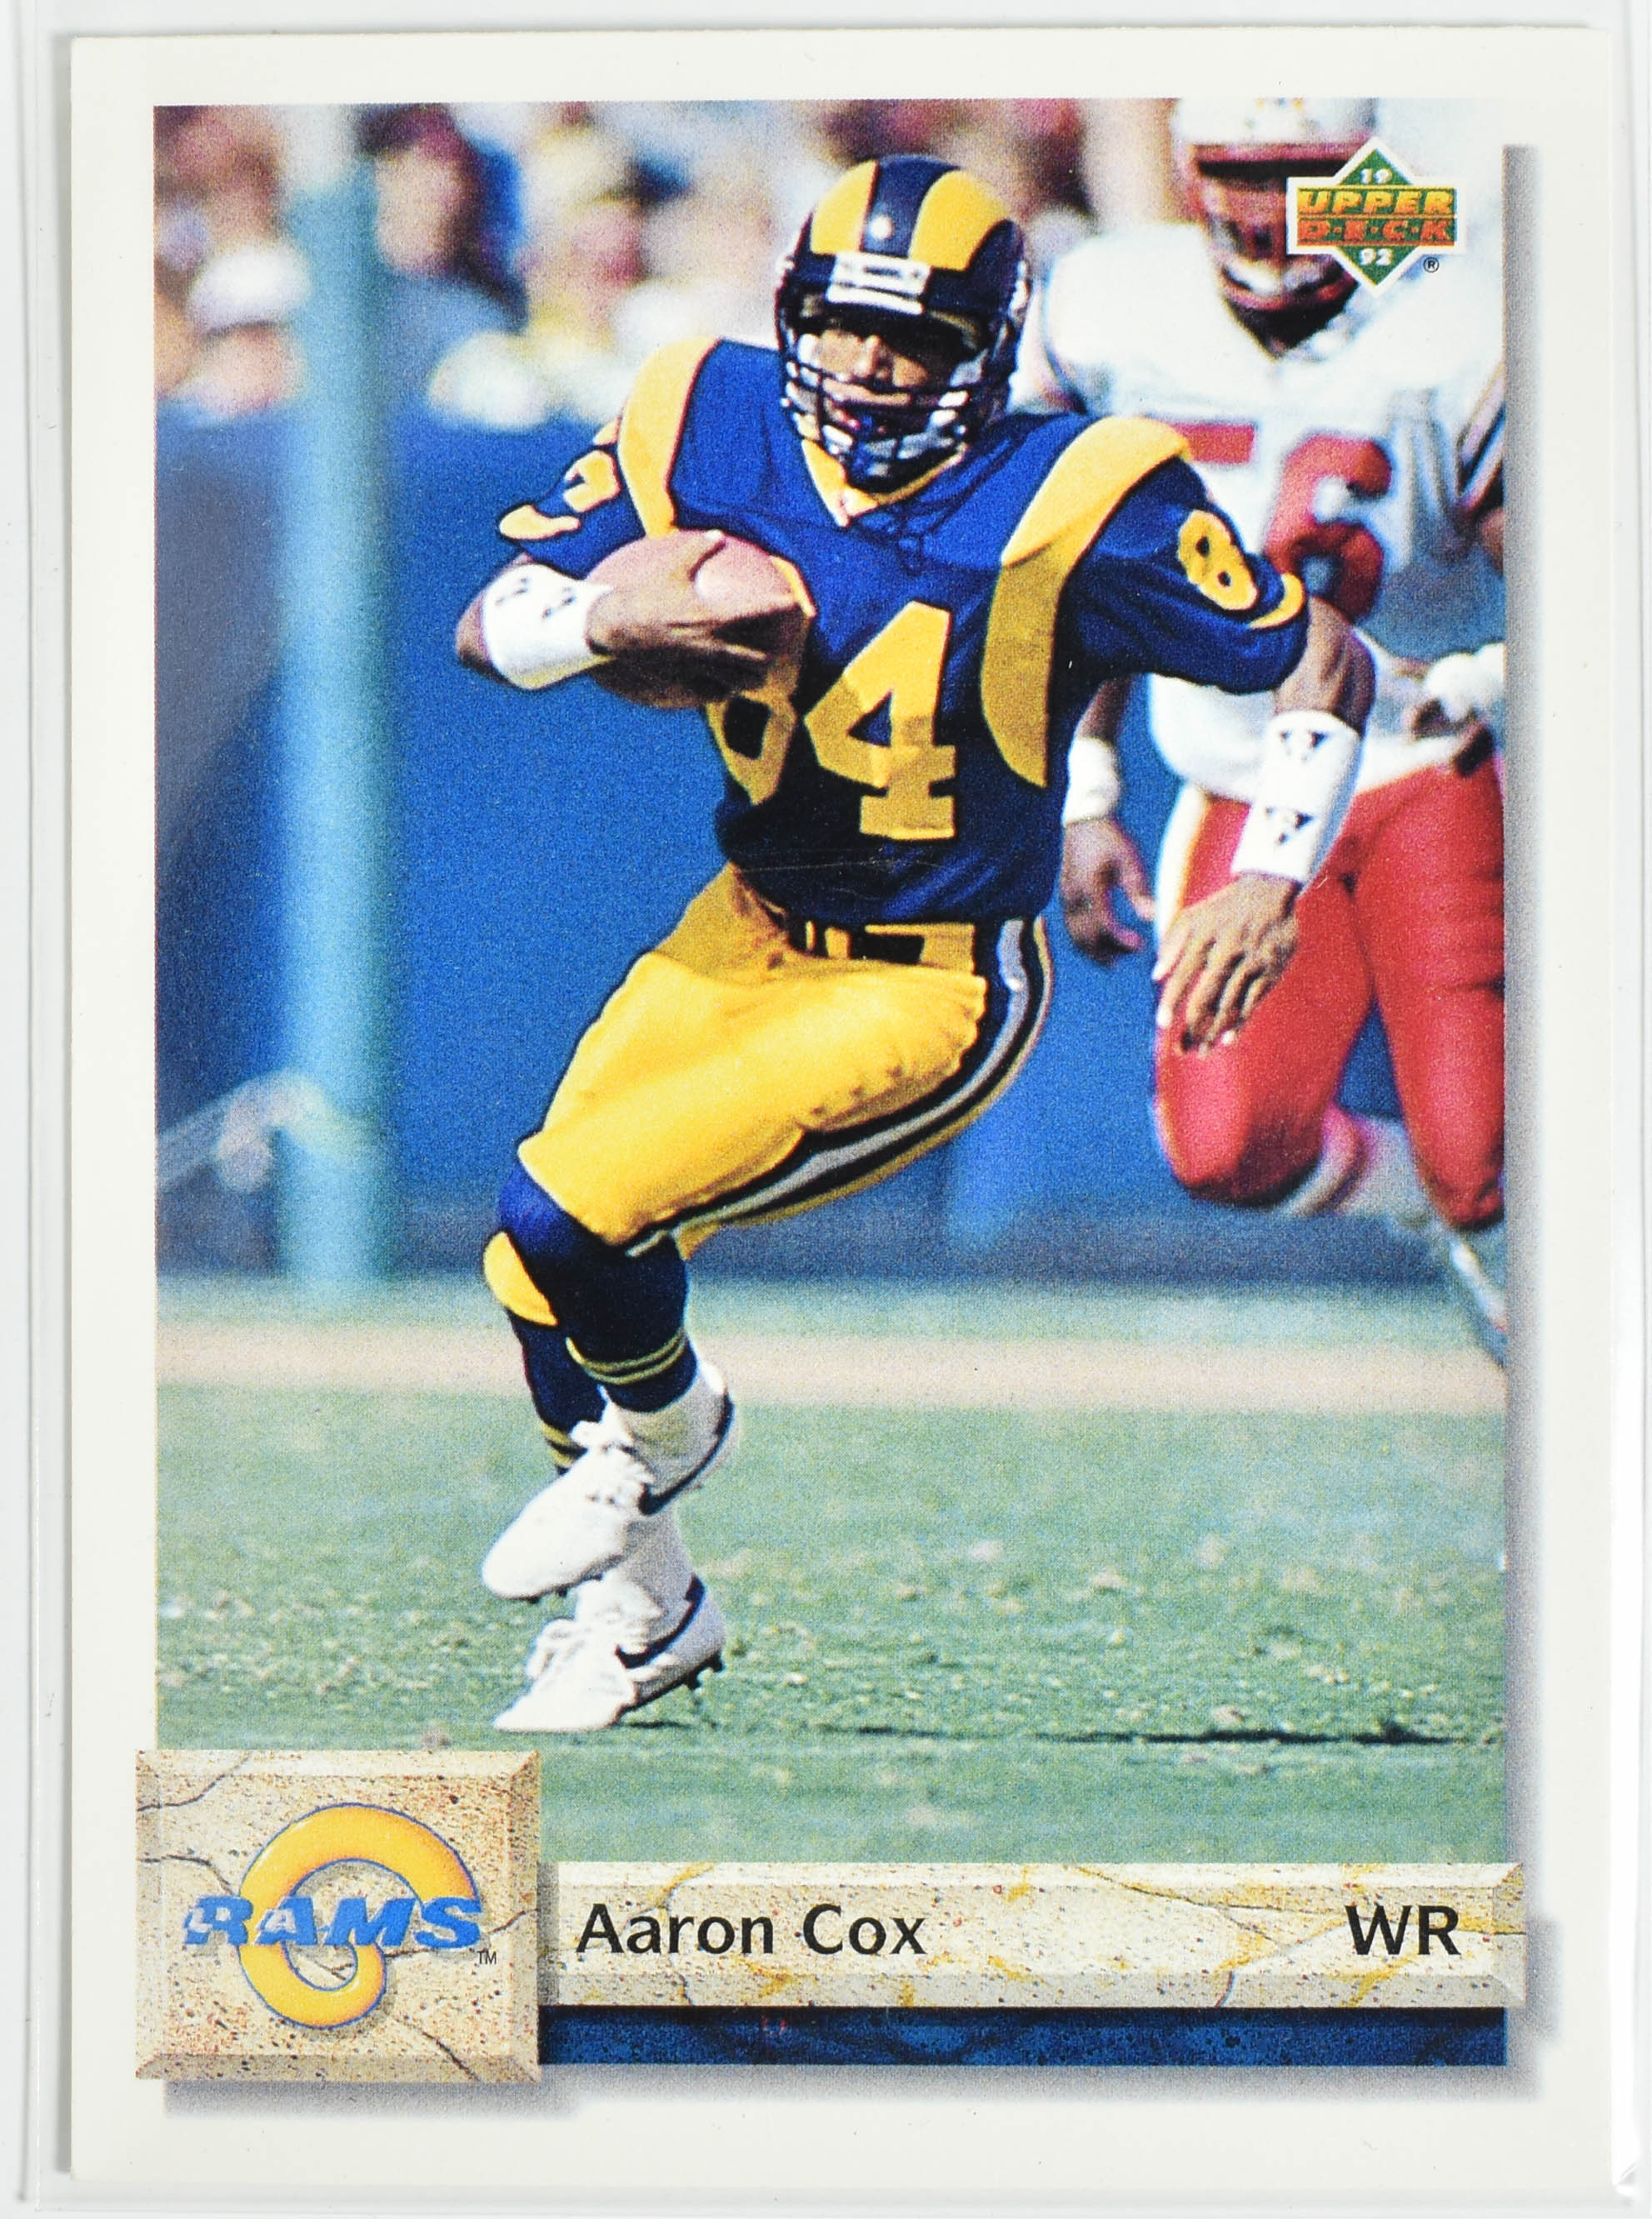 Aaron Cox 601 Upper Deck 1992 Rams Football Card